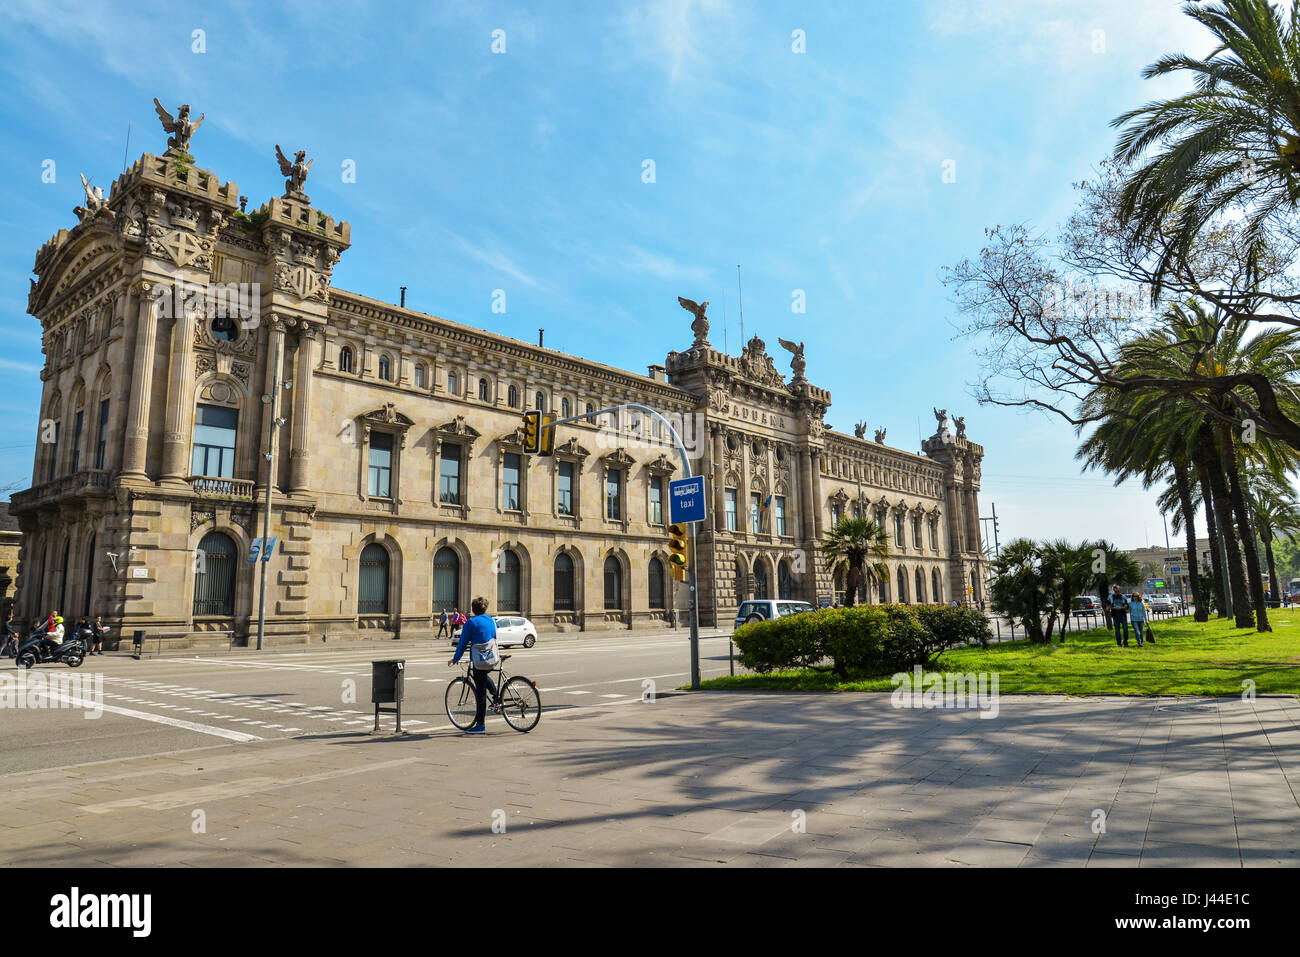 BARCELONA, SPAIN - April 15, 2017: Architecture, classic style, Custom building, Edificio de la Aduana del Puerto, by Enric Sagnier i Villavecchia and Stock Photo